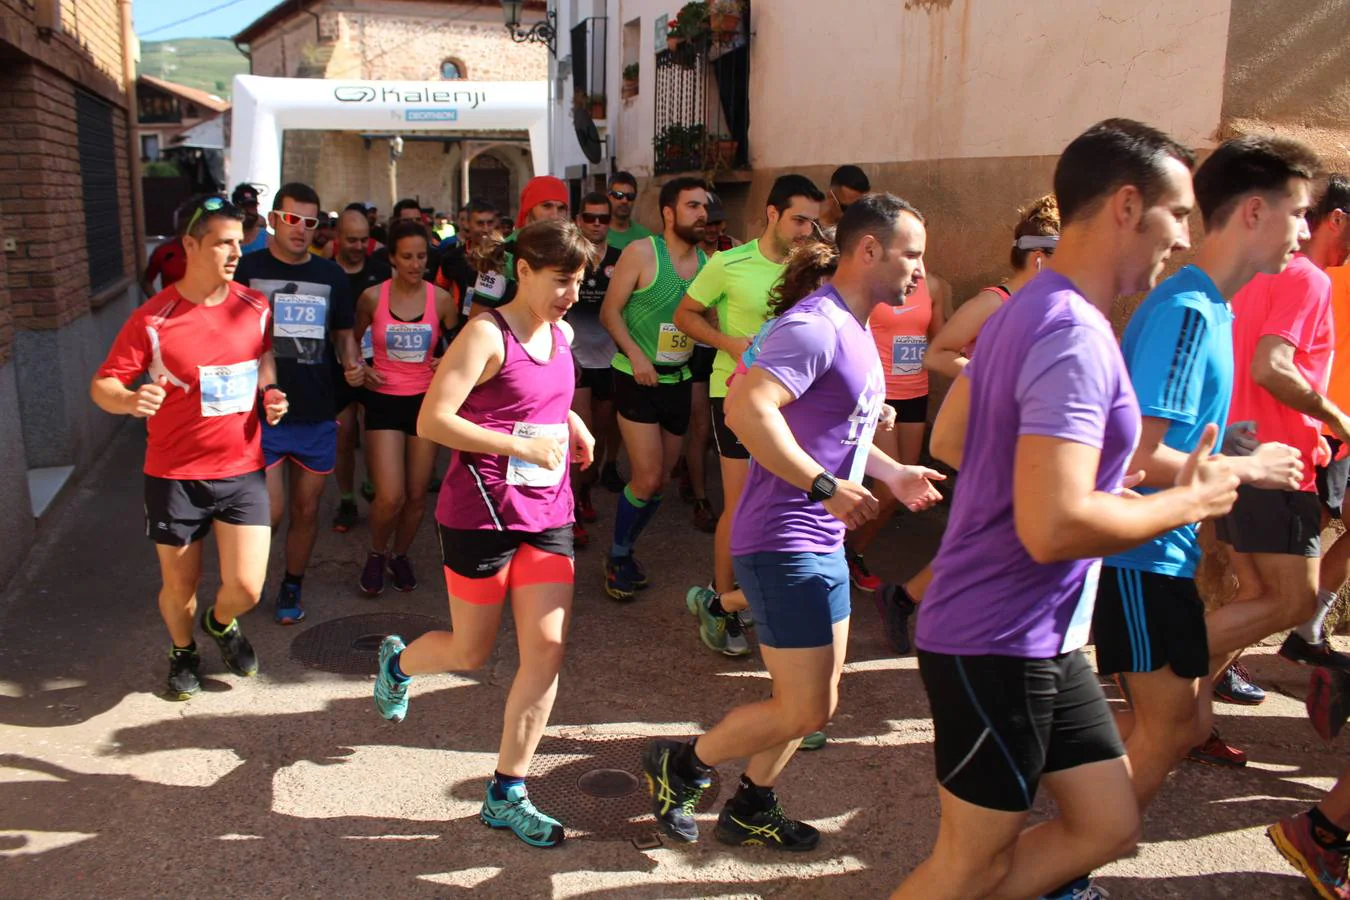 Más de 300 corredores participan en la quinta edición del Matutrail